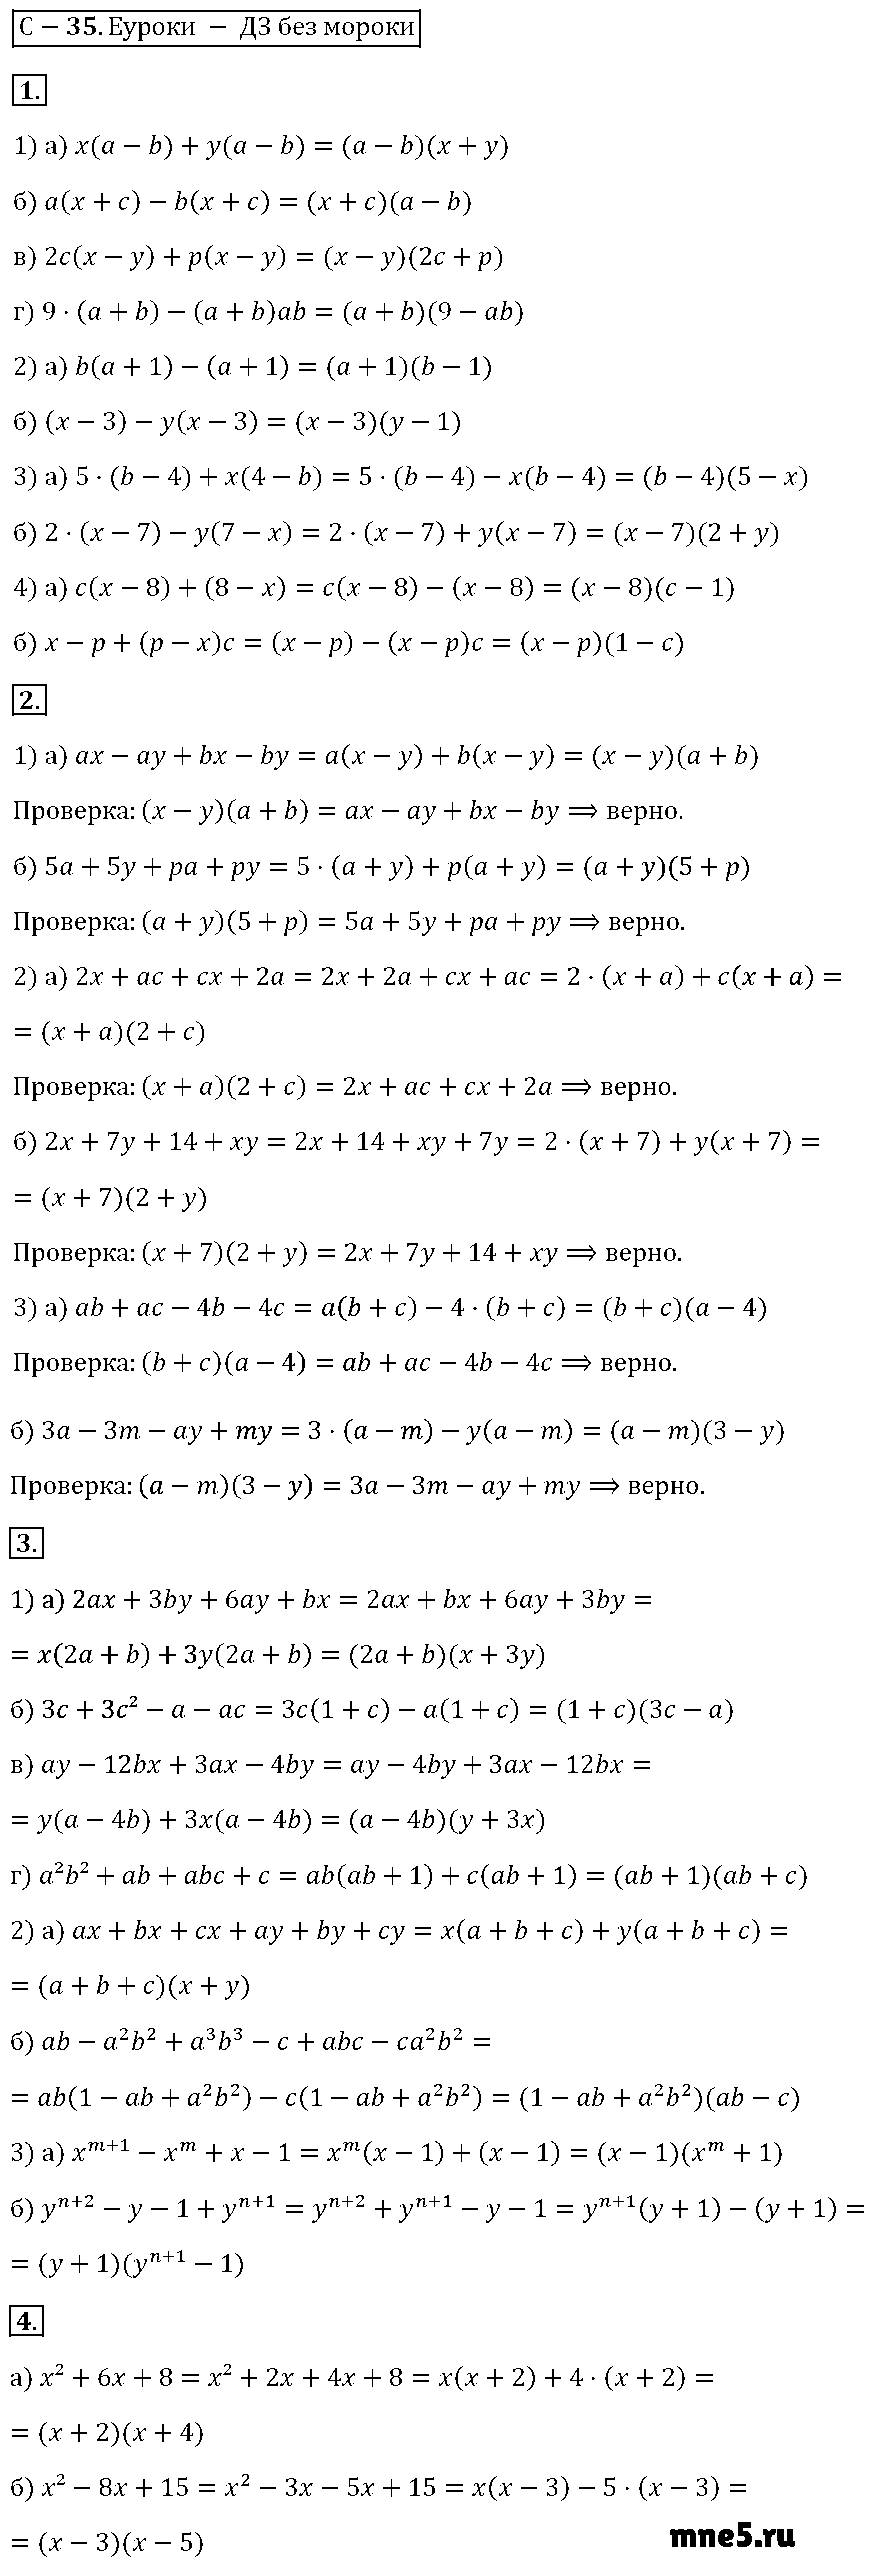 ГДЗ Алгебра 7 класс - С-35. Разложение многочленов на множители способом группировки